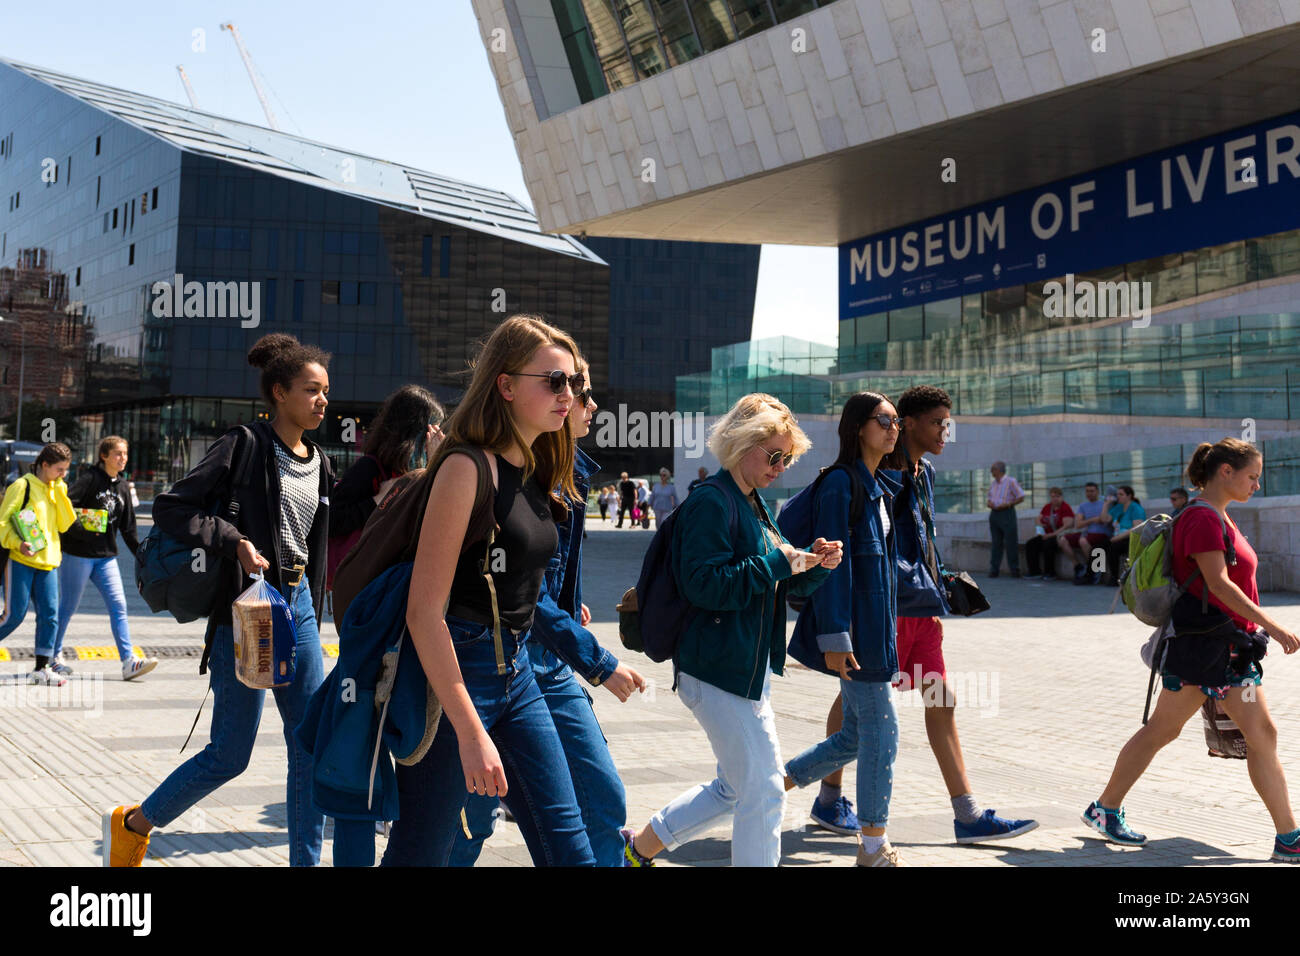 Liverpool und junge Menschen. Fußgänger an der Waterfront. Merseyside England Großbritannien Stockfoto